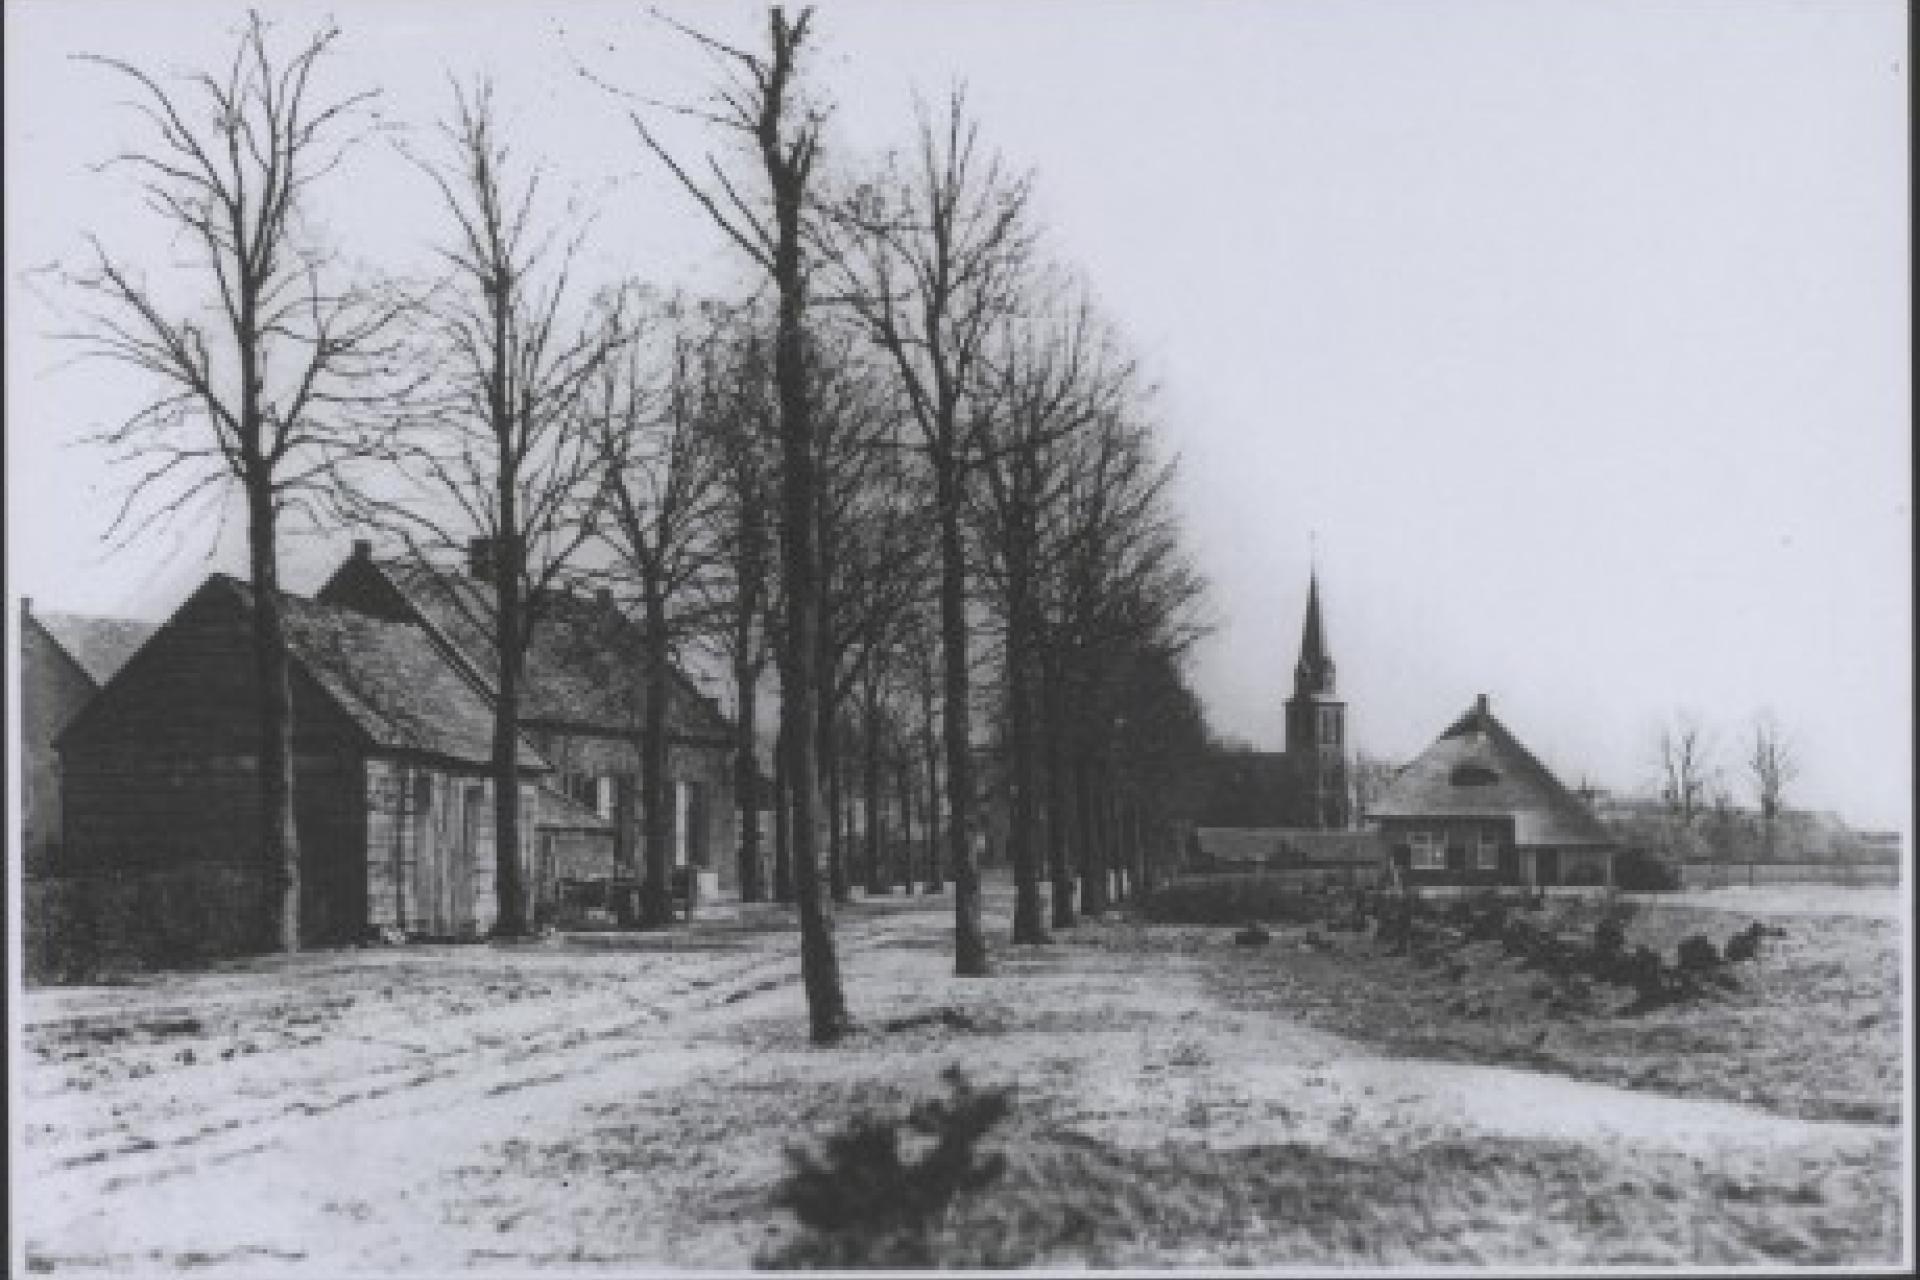 oude foto van Handel met daarop een aantal huizen, bomen en weiland